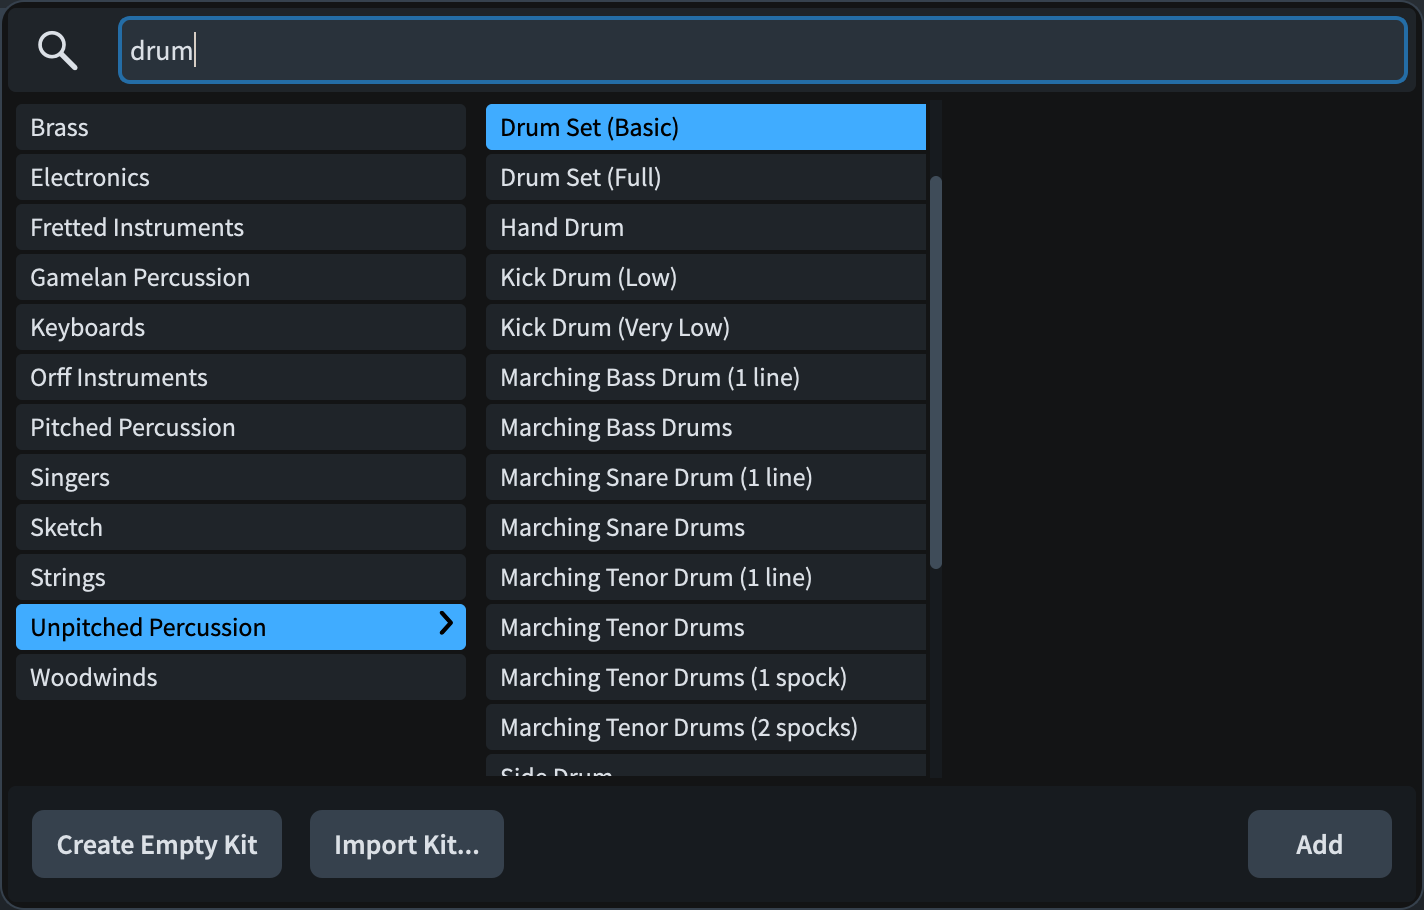 Selettore degli strumenti filtrato per mezzo del termine di ricerca "drum"